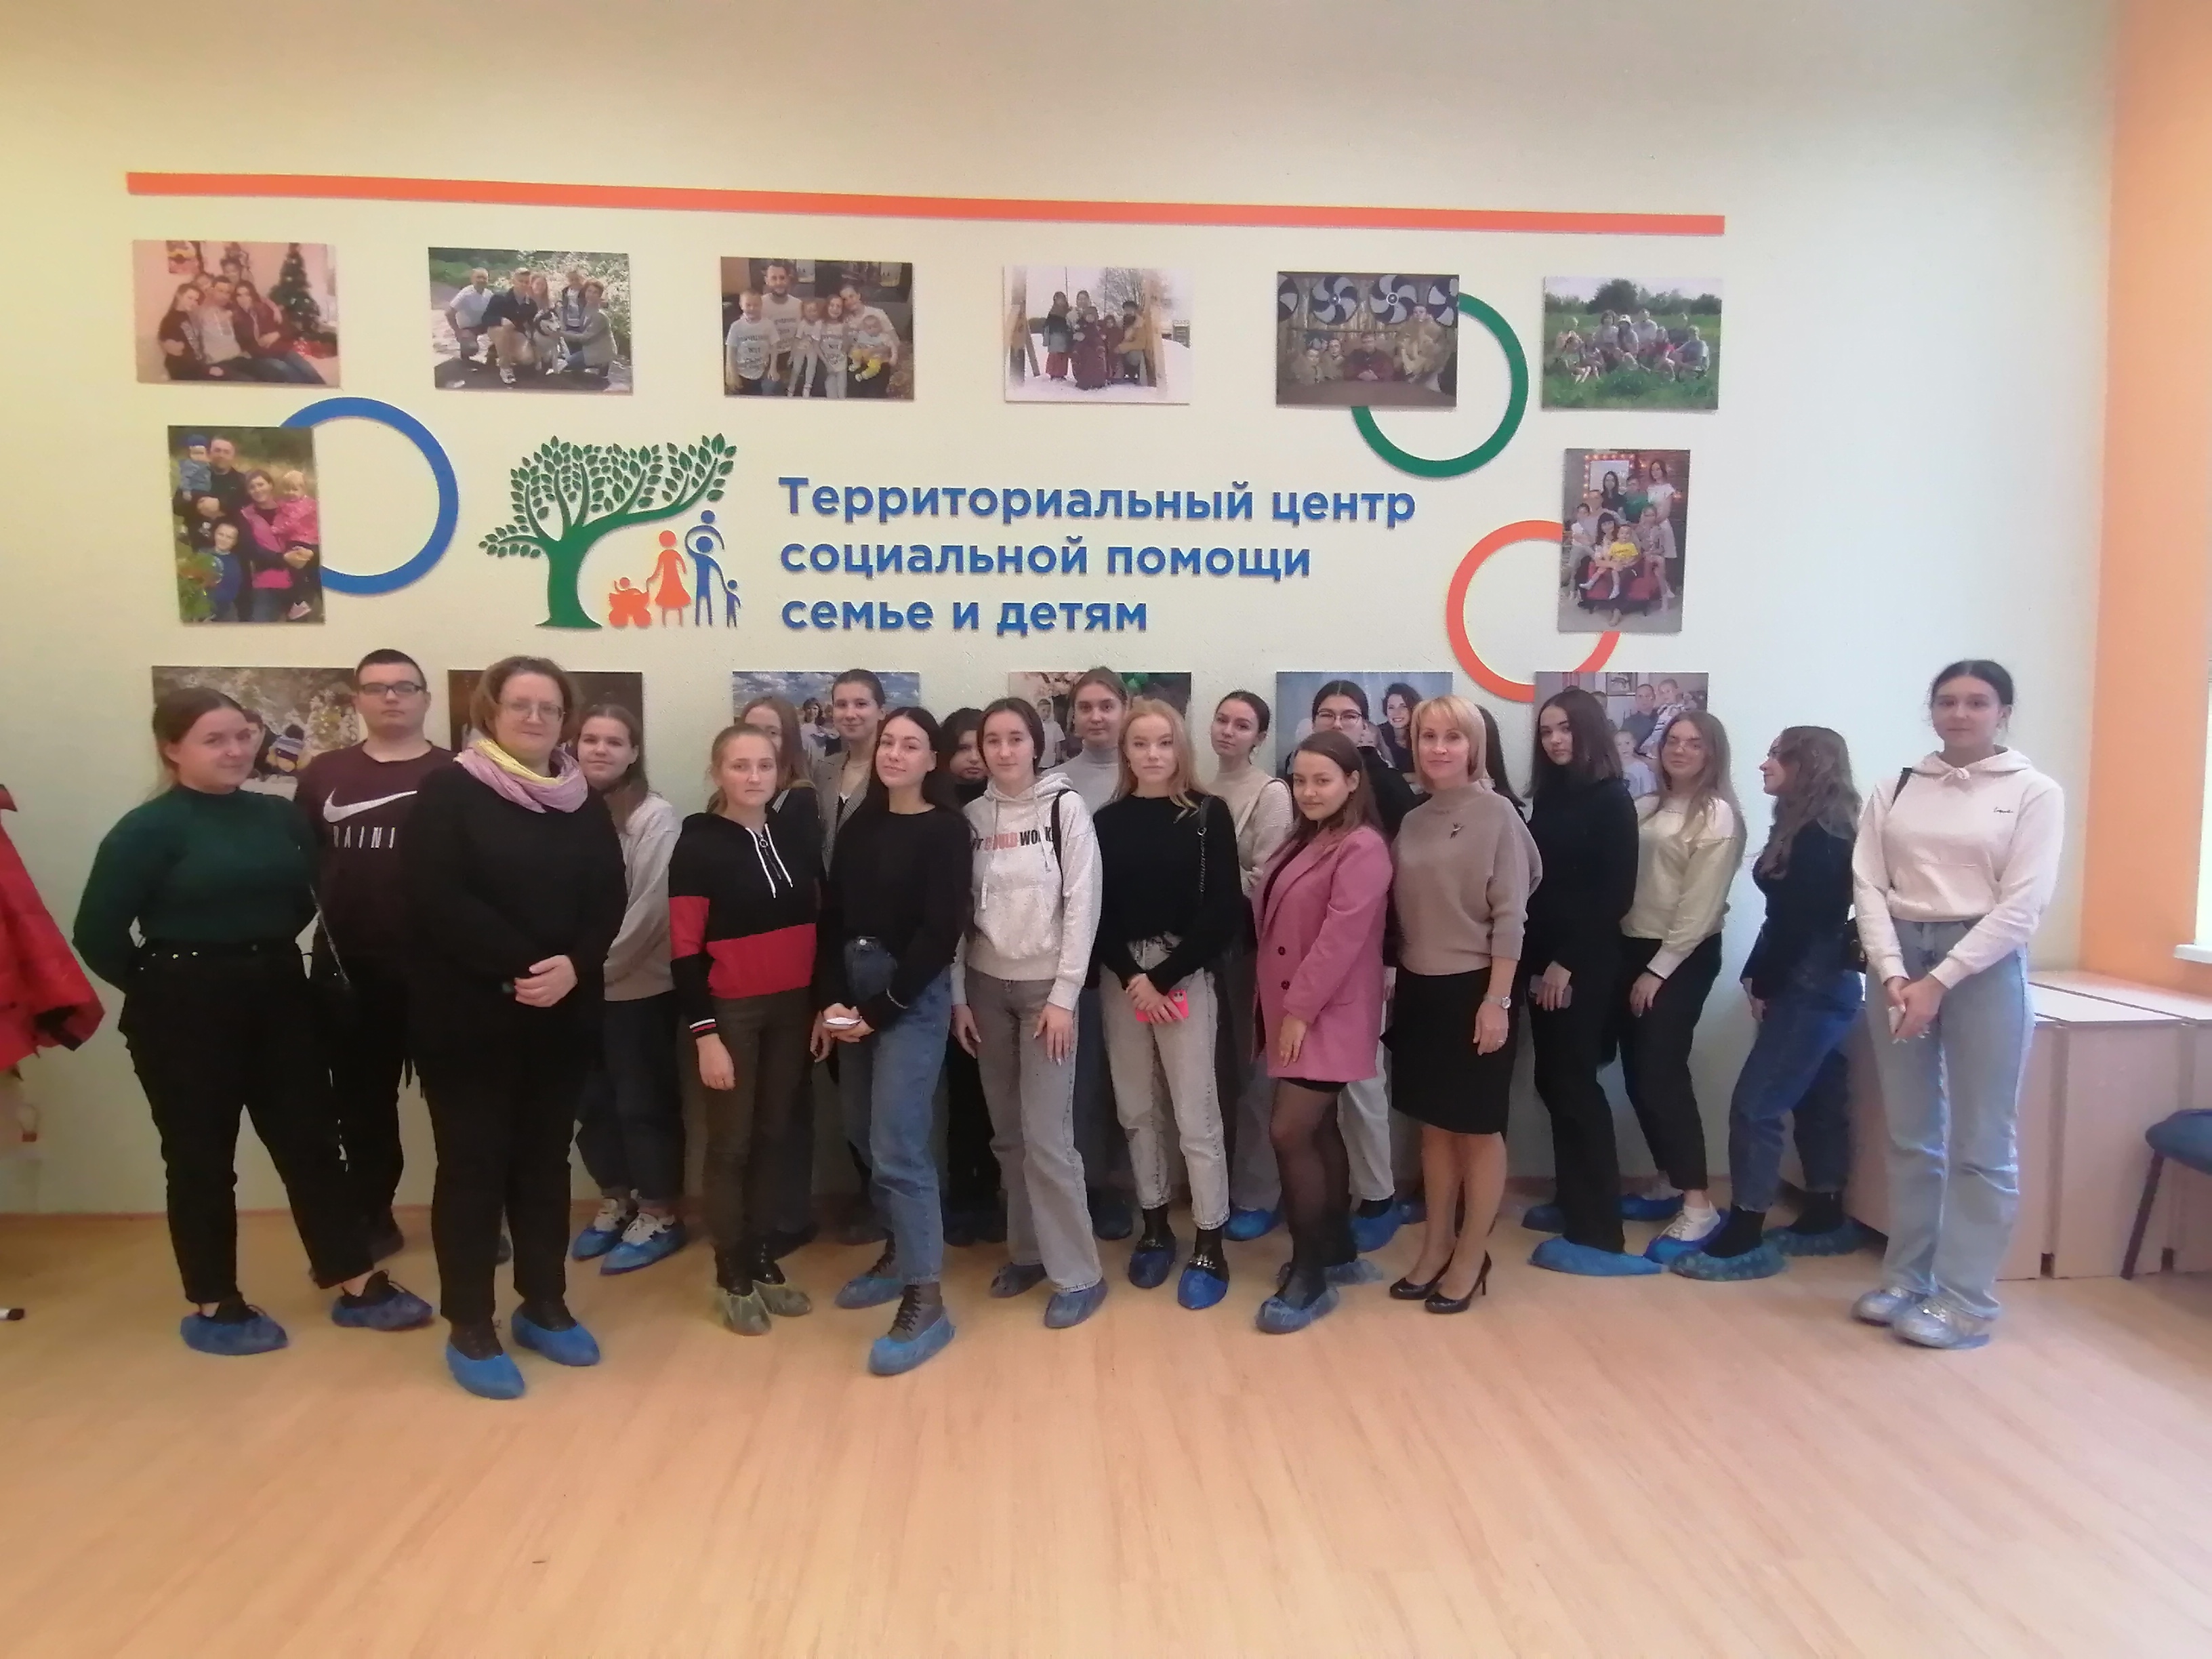 Студенты Вологодского промышленно-технологического техникума ознакомились с деятельностью Территориального центра